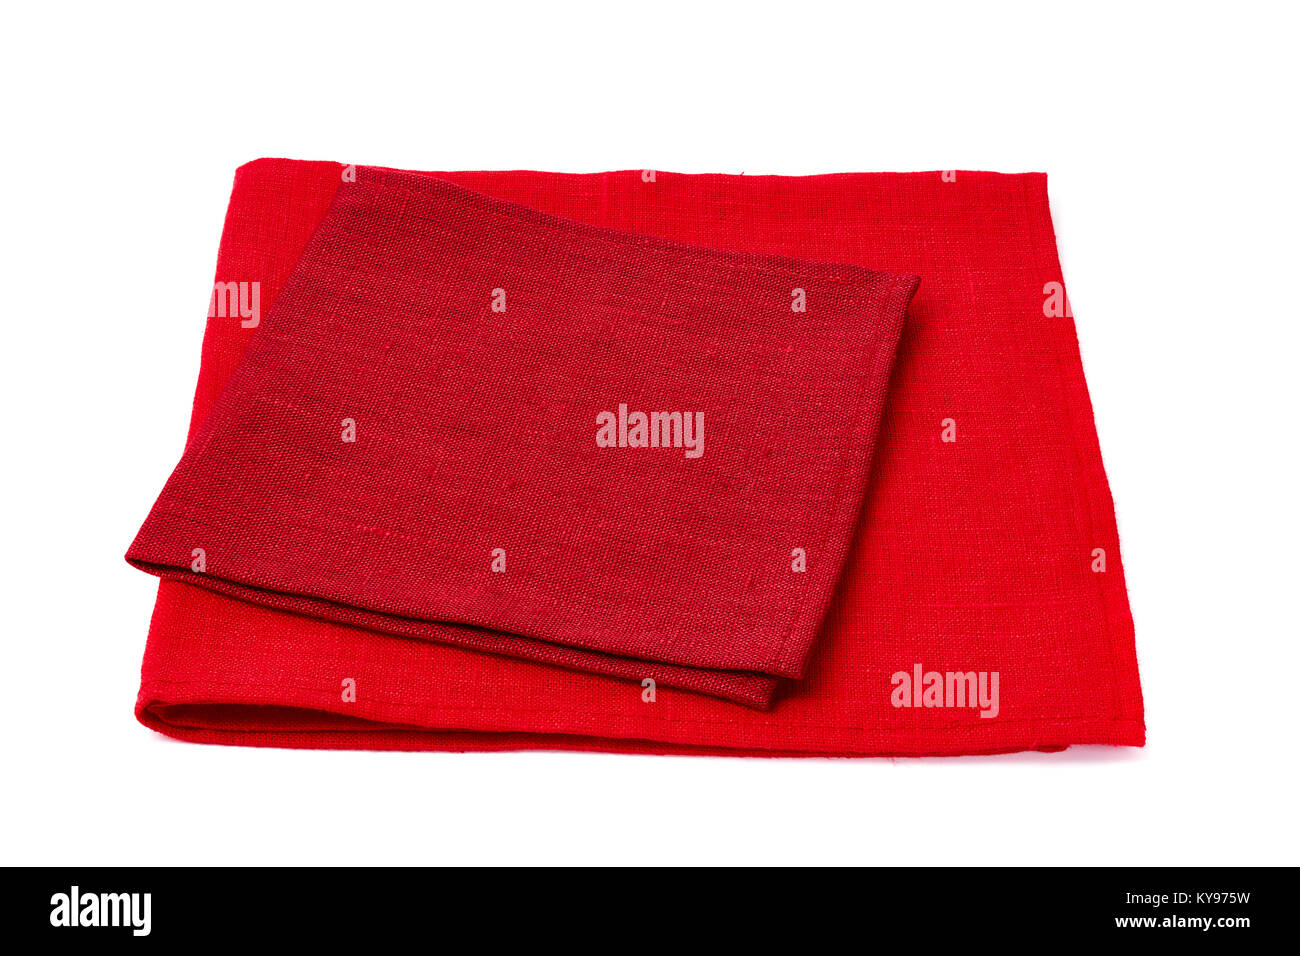 Deux serviettes de table rouge sur blanc Banque D'Images